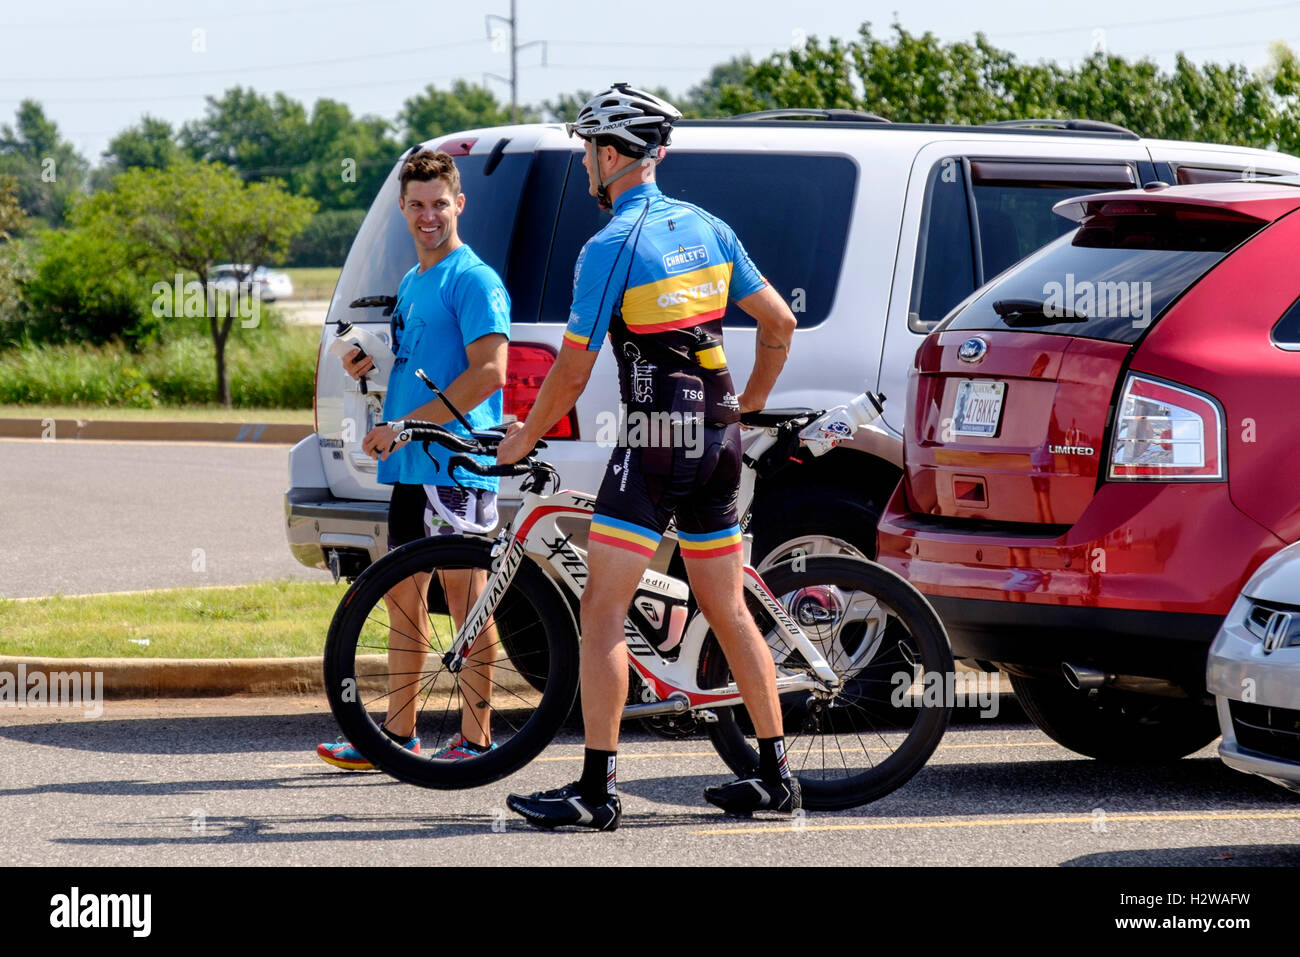 Un jeune homme en vélo gear s'apprête à faire du vélo tout en parlant à un autre homme. Oklahoma City, Oklahoma, USA. Banque D'Images